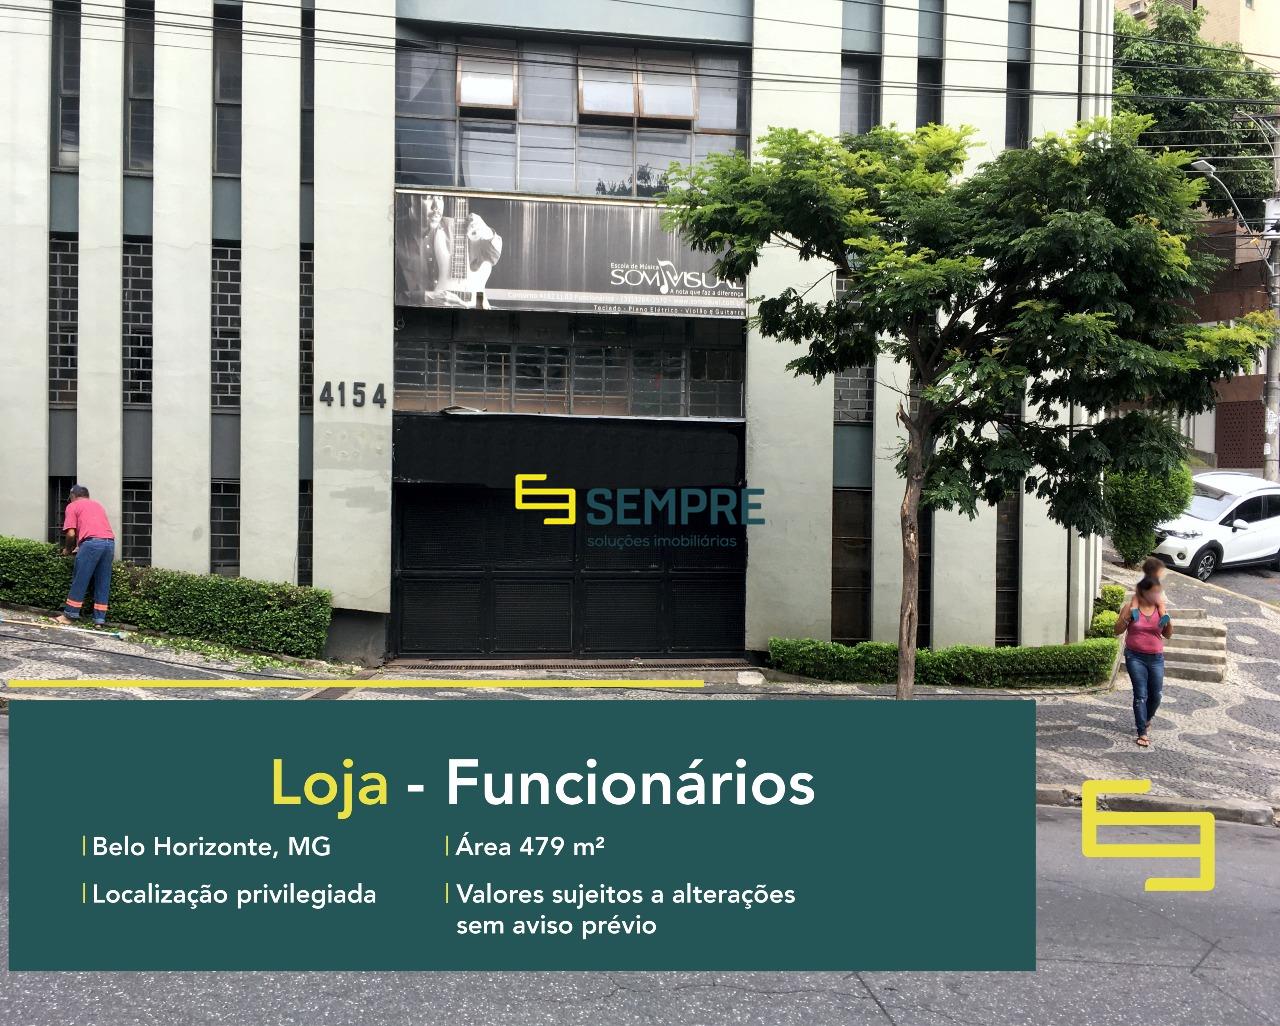 Venda de loja no Funcionários em Belo Horizonte, excelente localização. O estabelecimento comercial conta com área de 479 m².